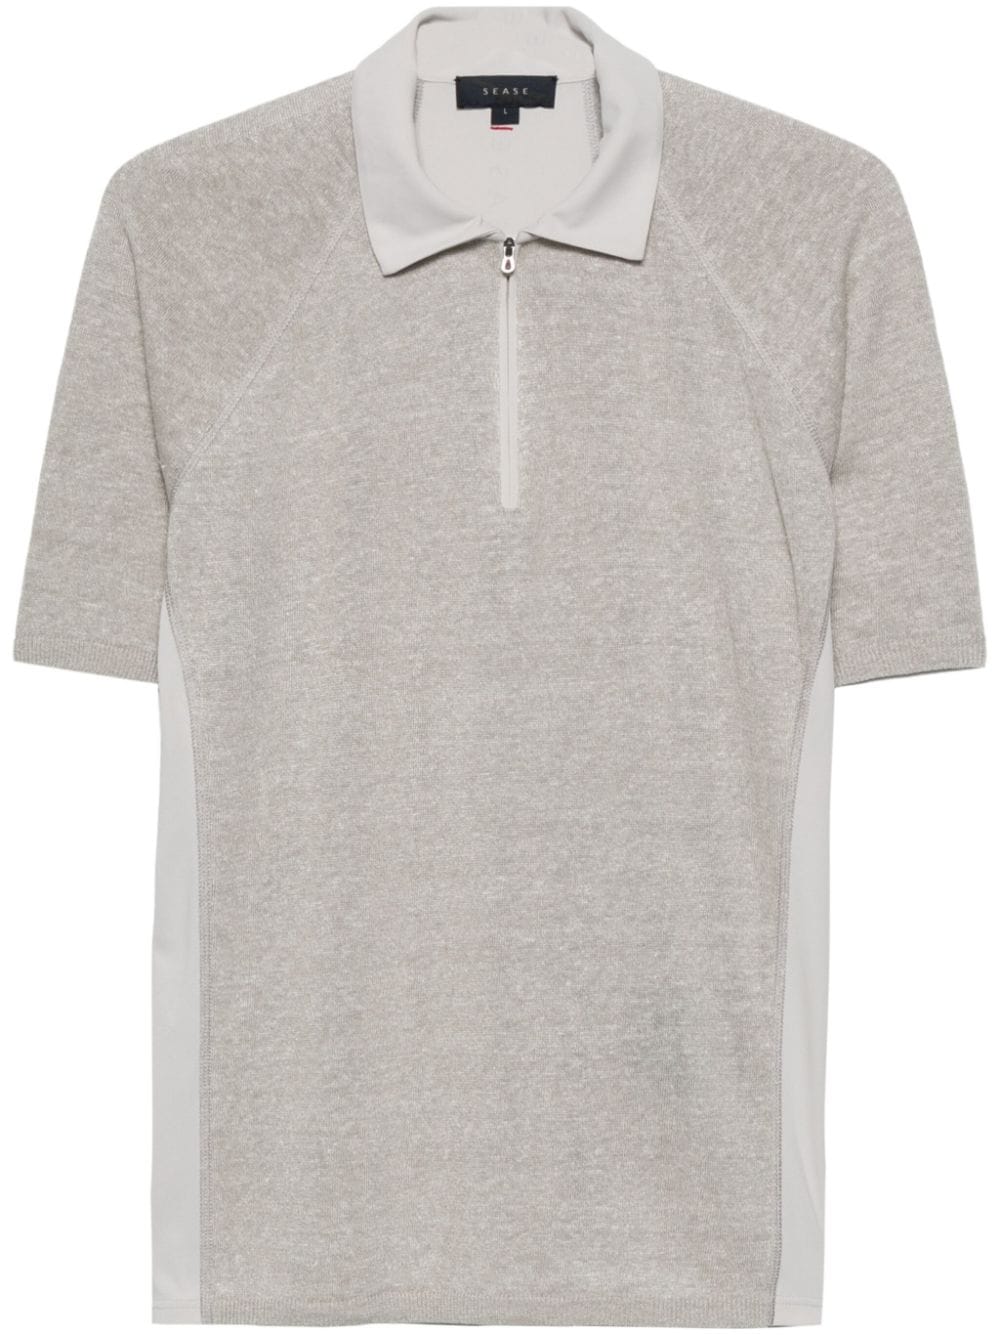 Sease Hybrid polo shirt - Grey von Sease